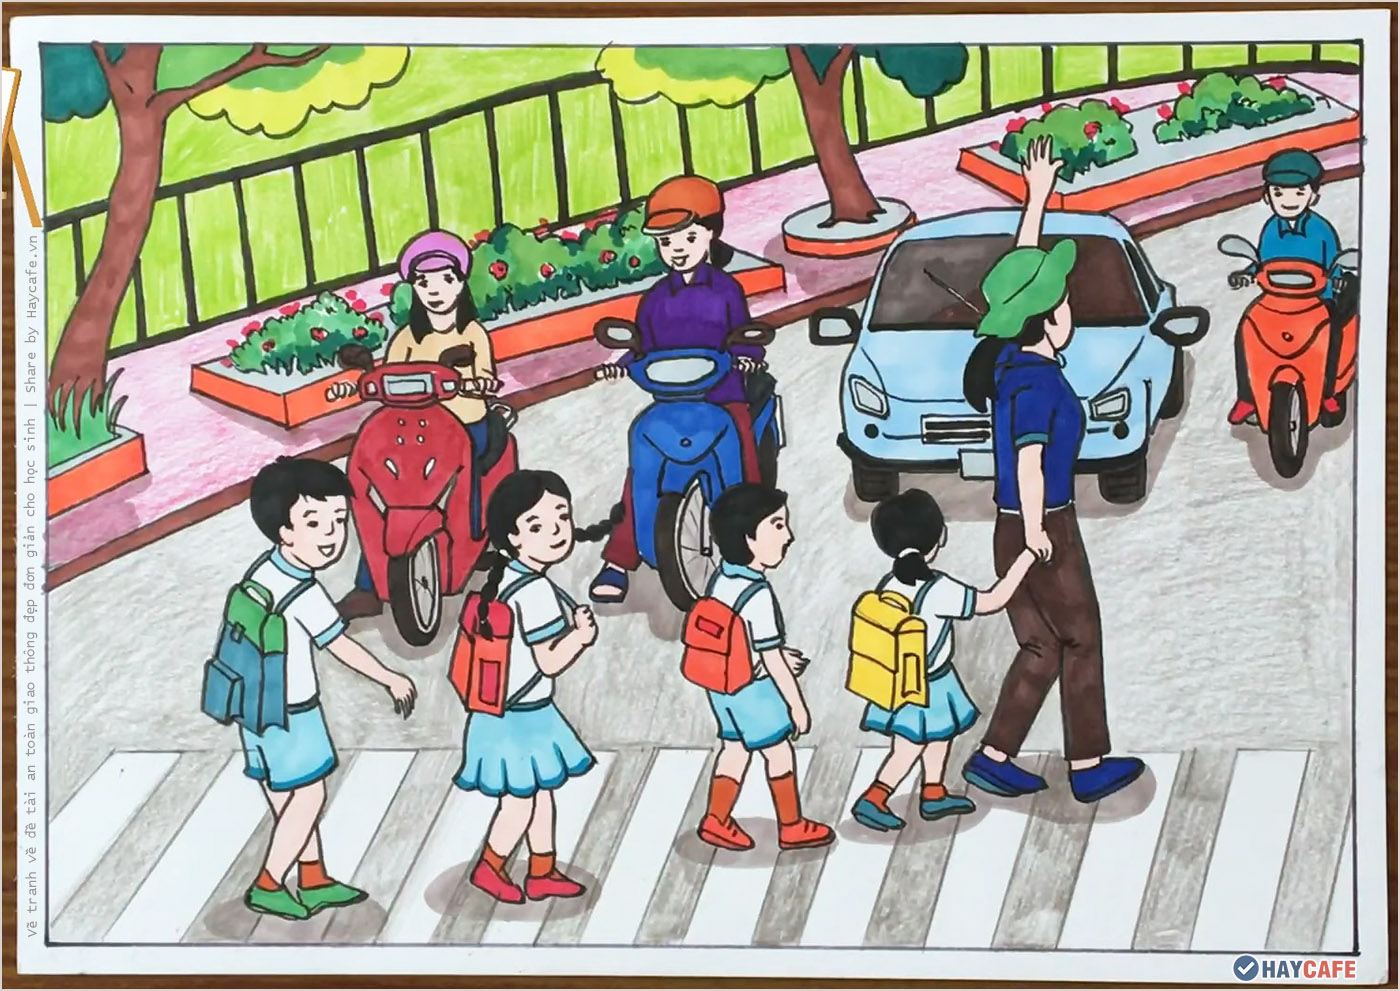 Khai mạc Hội thi vẽ tranh tuyên truyền an toàn giao thông  Chi tiết tin  tức  Huyện Sơn Động